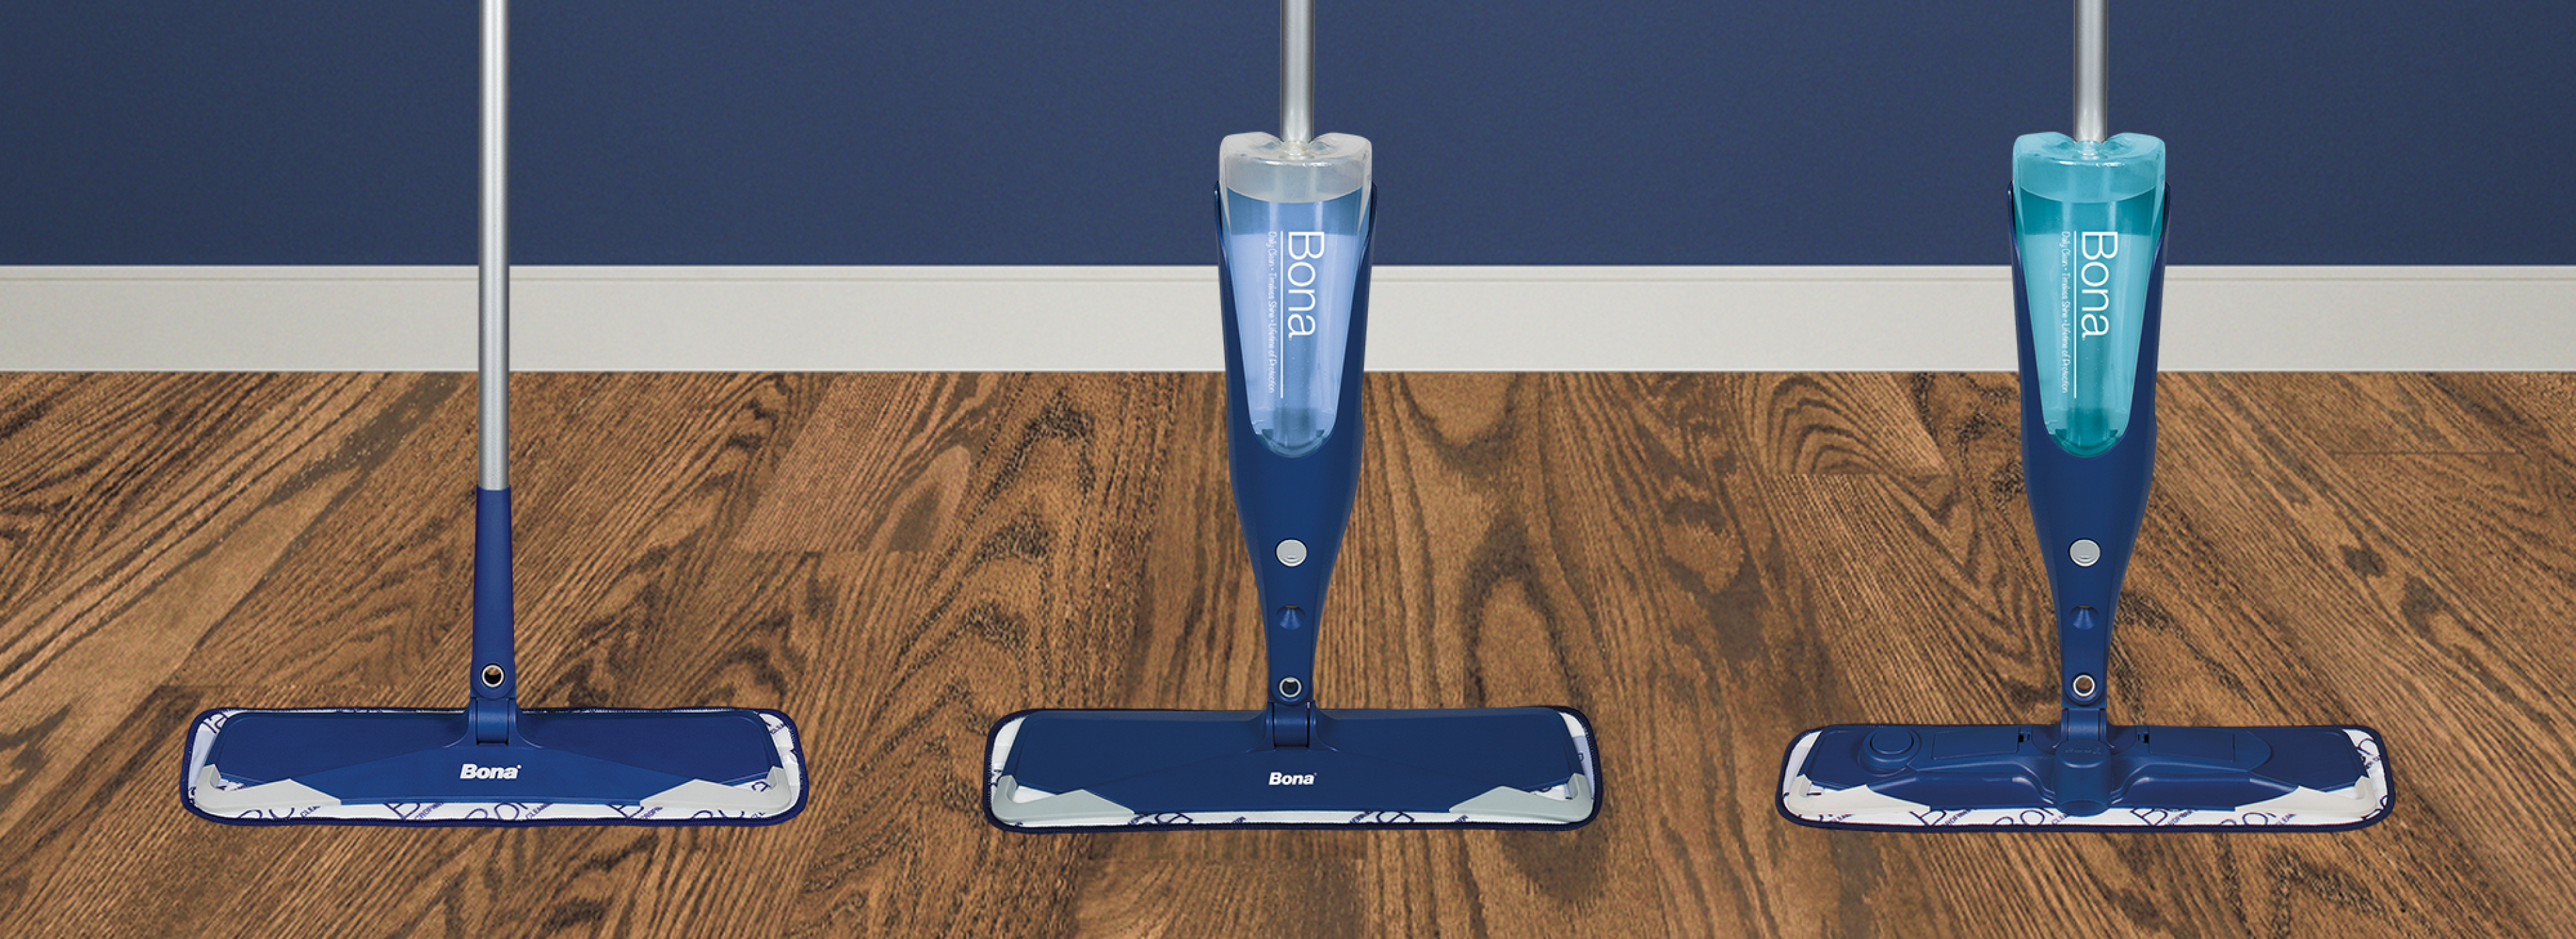 Reveal™ Microfiber Spray Mop Floor Cleaning Kit